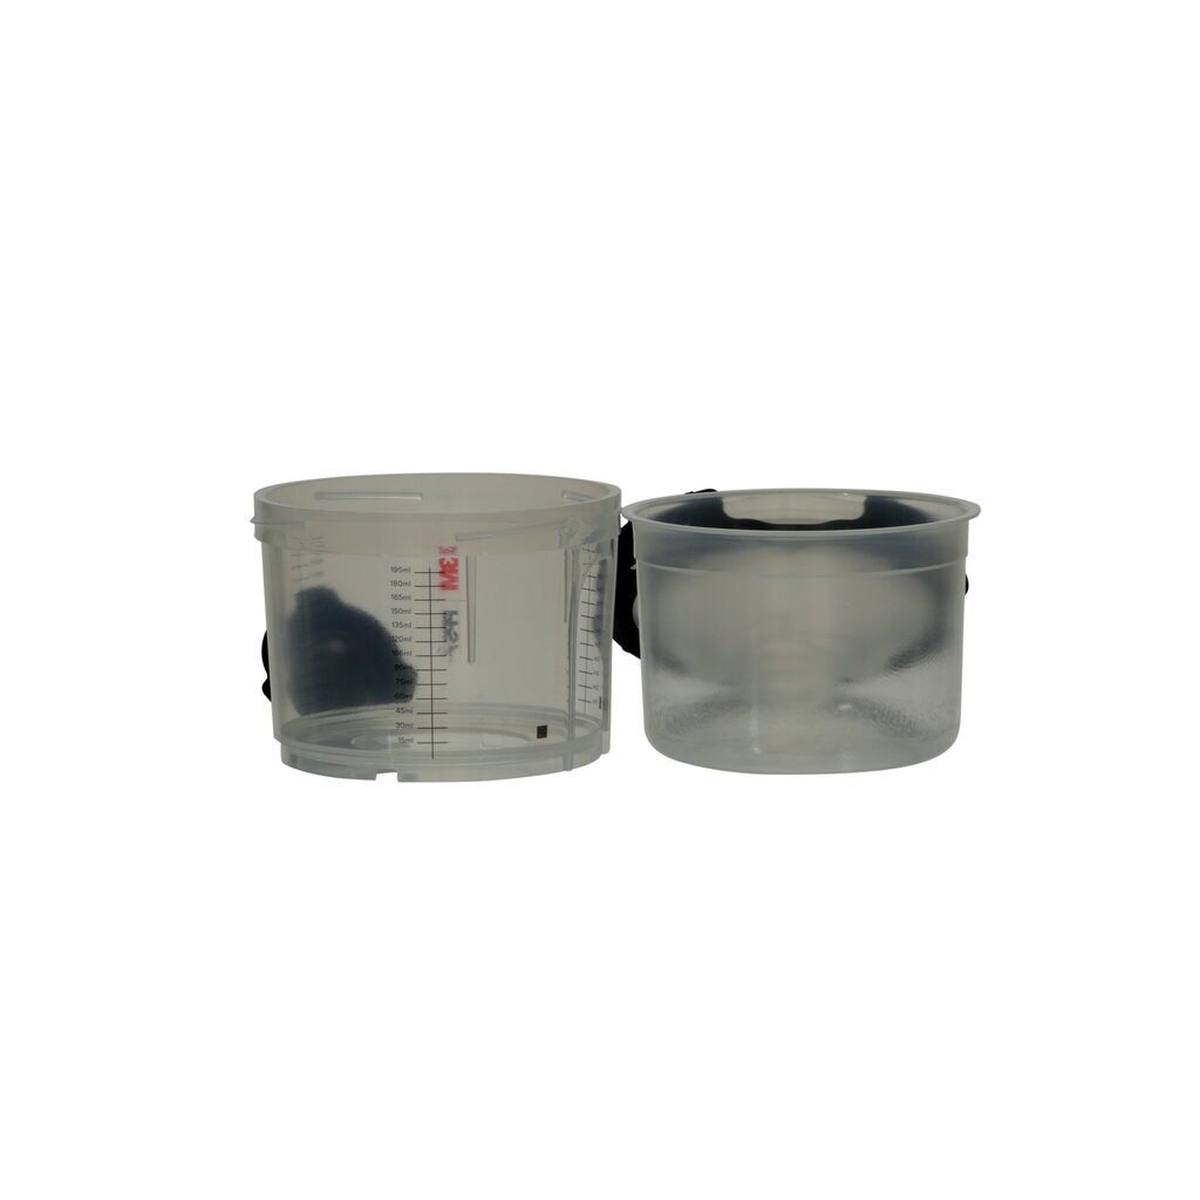 3M PPS Juego serie 2.0, pequeño, 170 ml, filtro de 200Î¼, 50 vasos interiores l 50 tapas l 32 tapones de cierre /1 vaso exterior 26114